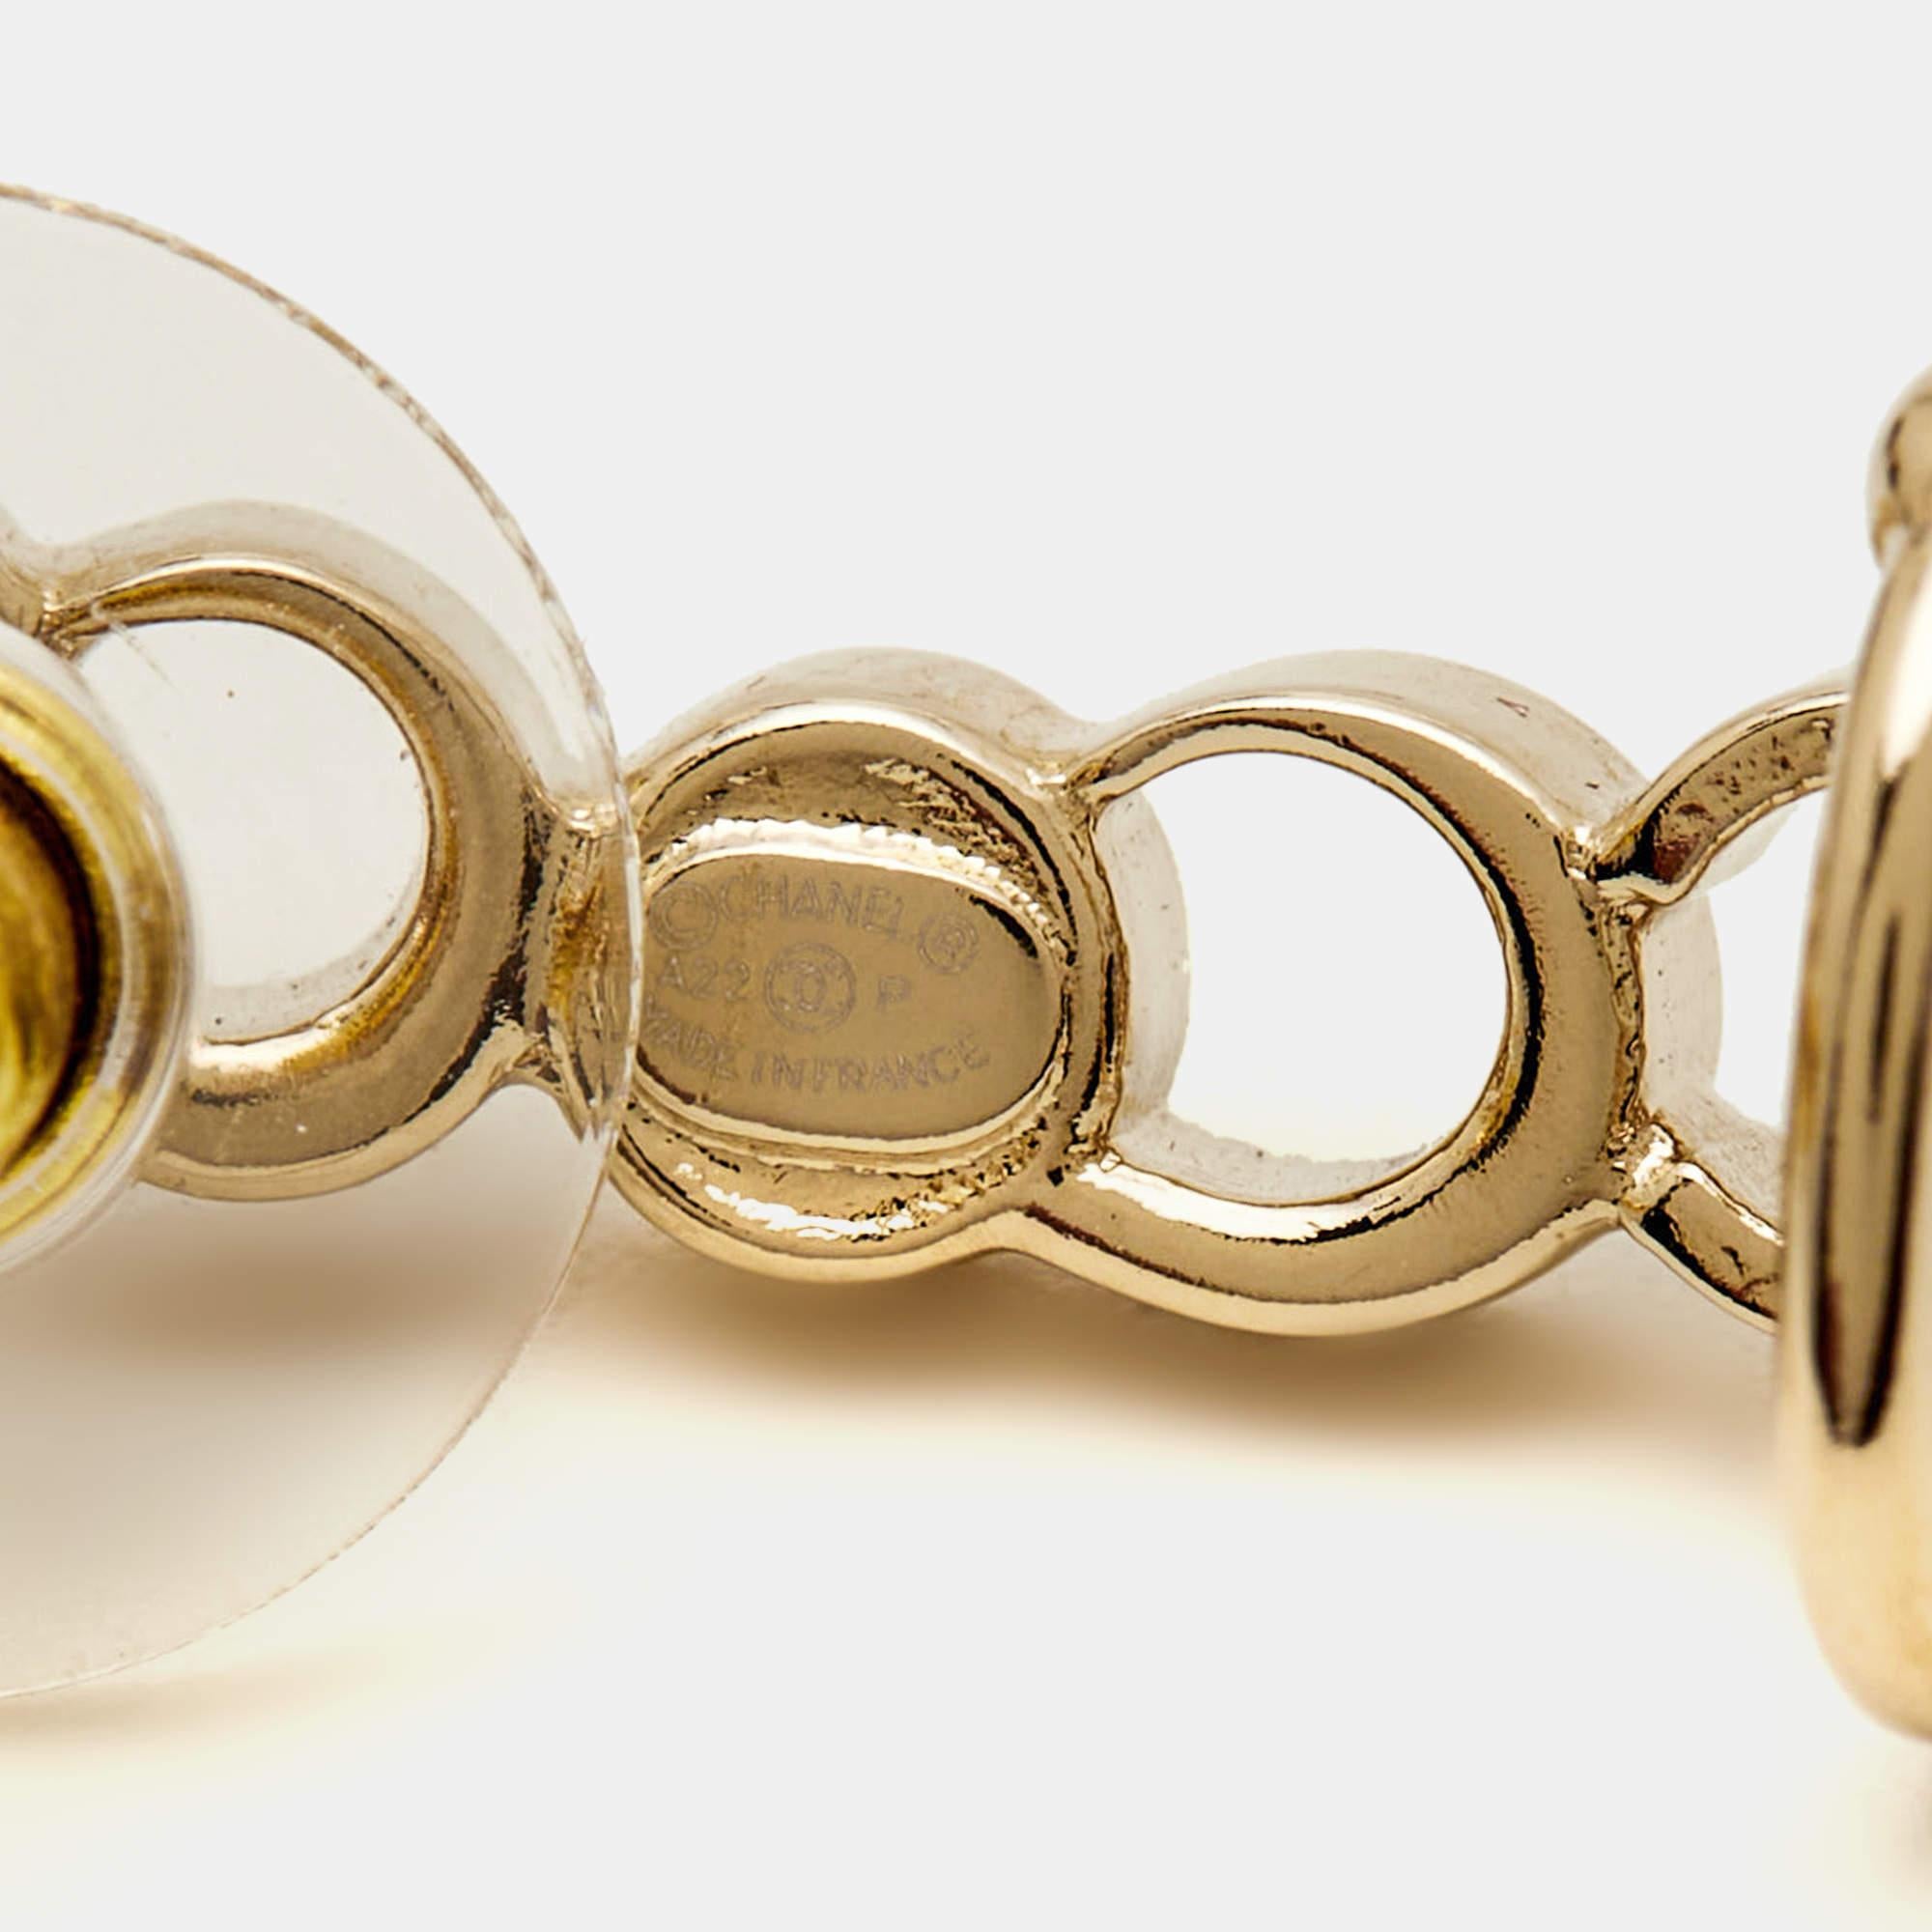 Die Chanel-Ohrringe strahlen Eleganz aus und haben ein einzigartiges Design. Diese Ohrringe aus goldfarbenem Metall zeigen das ikonische Chanel-Design, das mit funkelnden Kristallen verziert ist. Der Climber-Stil verleiht ihnen einen modernen Touch